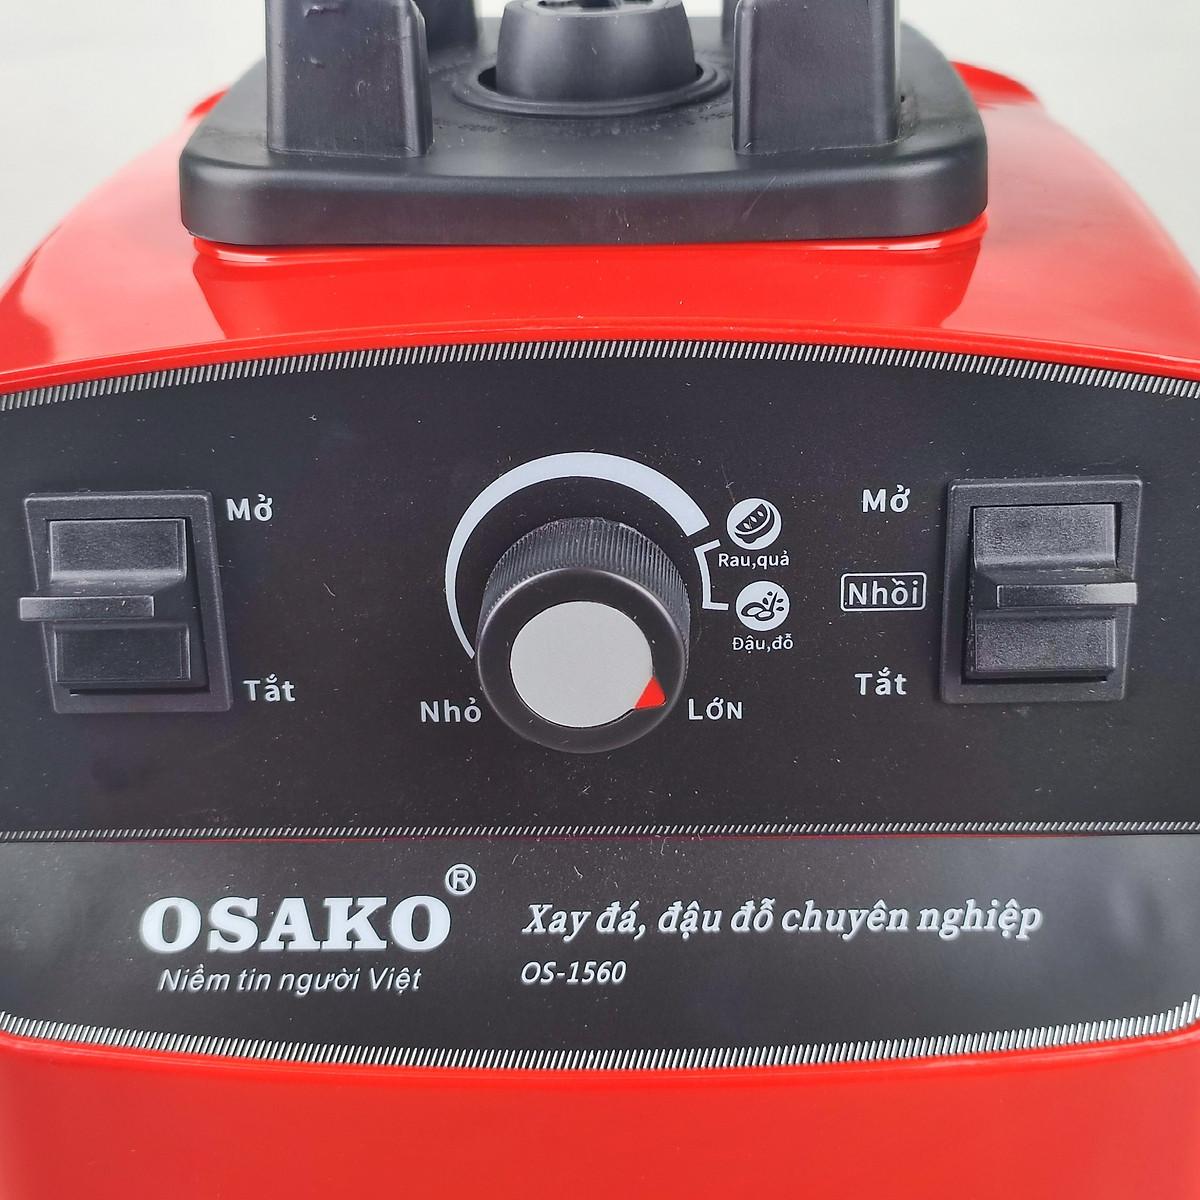 Máy xay sinh tố công nghiệp Osako Os.1560, cối 2lit, có chức năng rau quả và xay đậu đỗ hạt khô, màu đỏ-hàng chính hãng